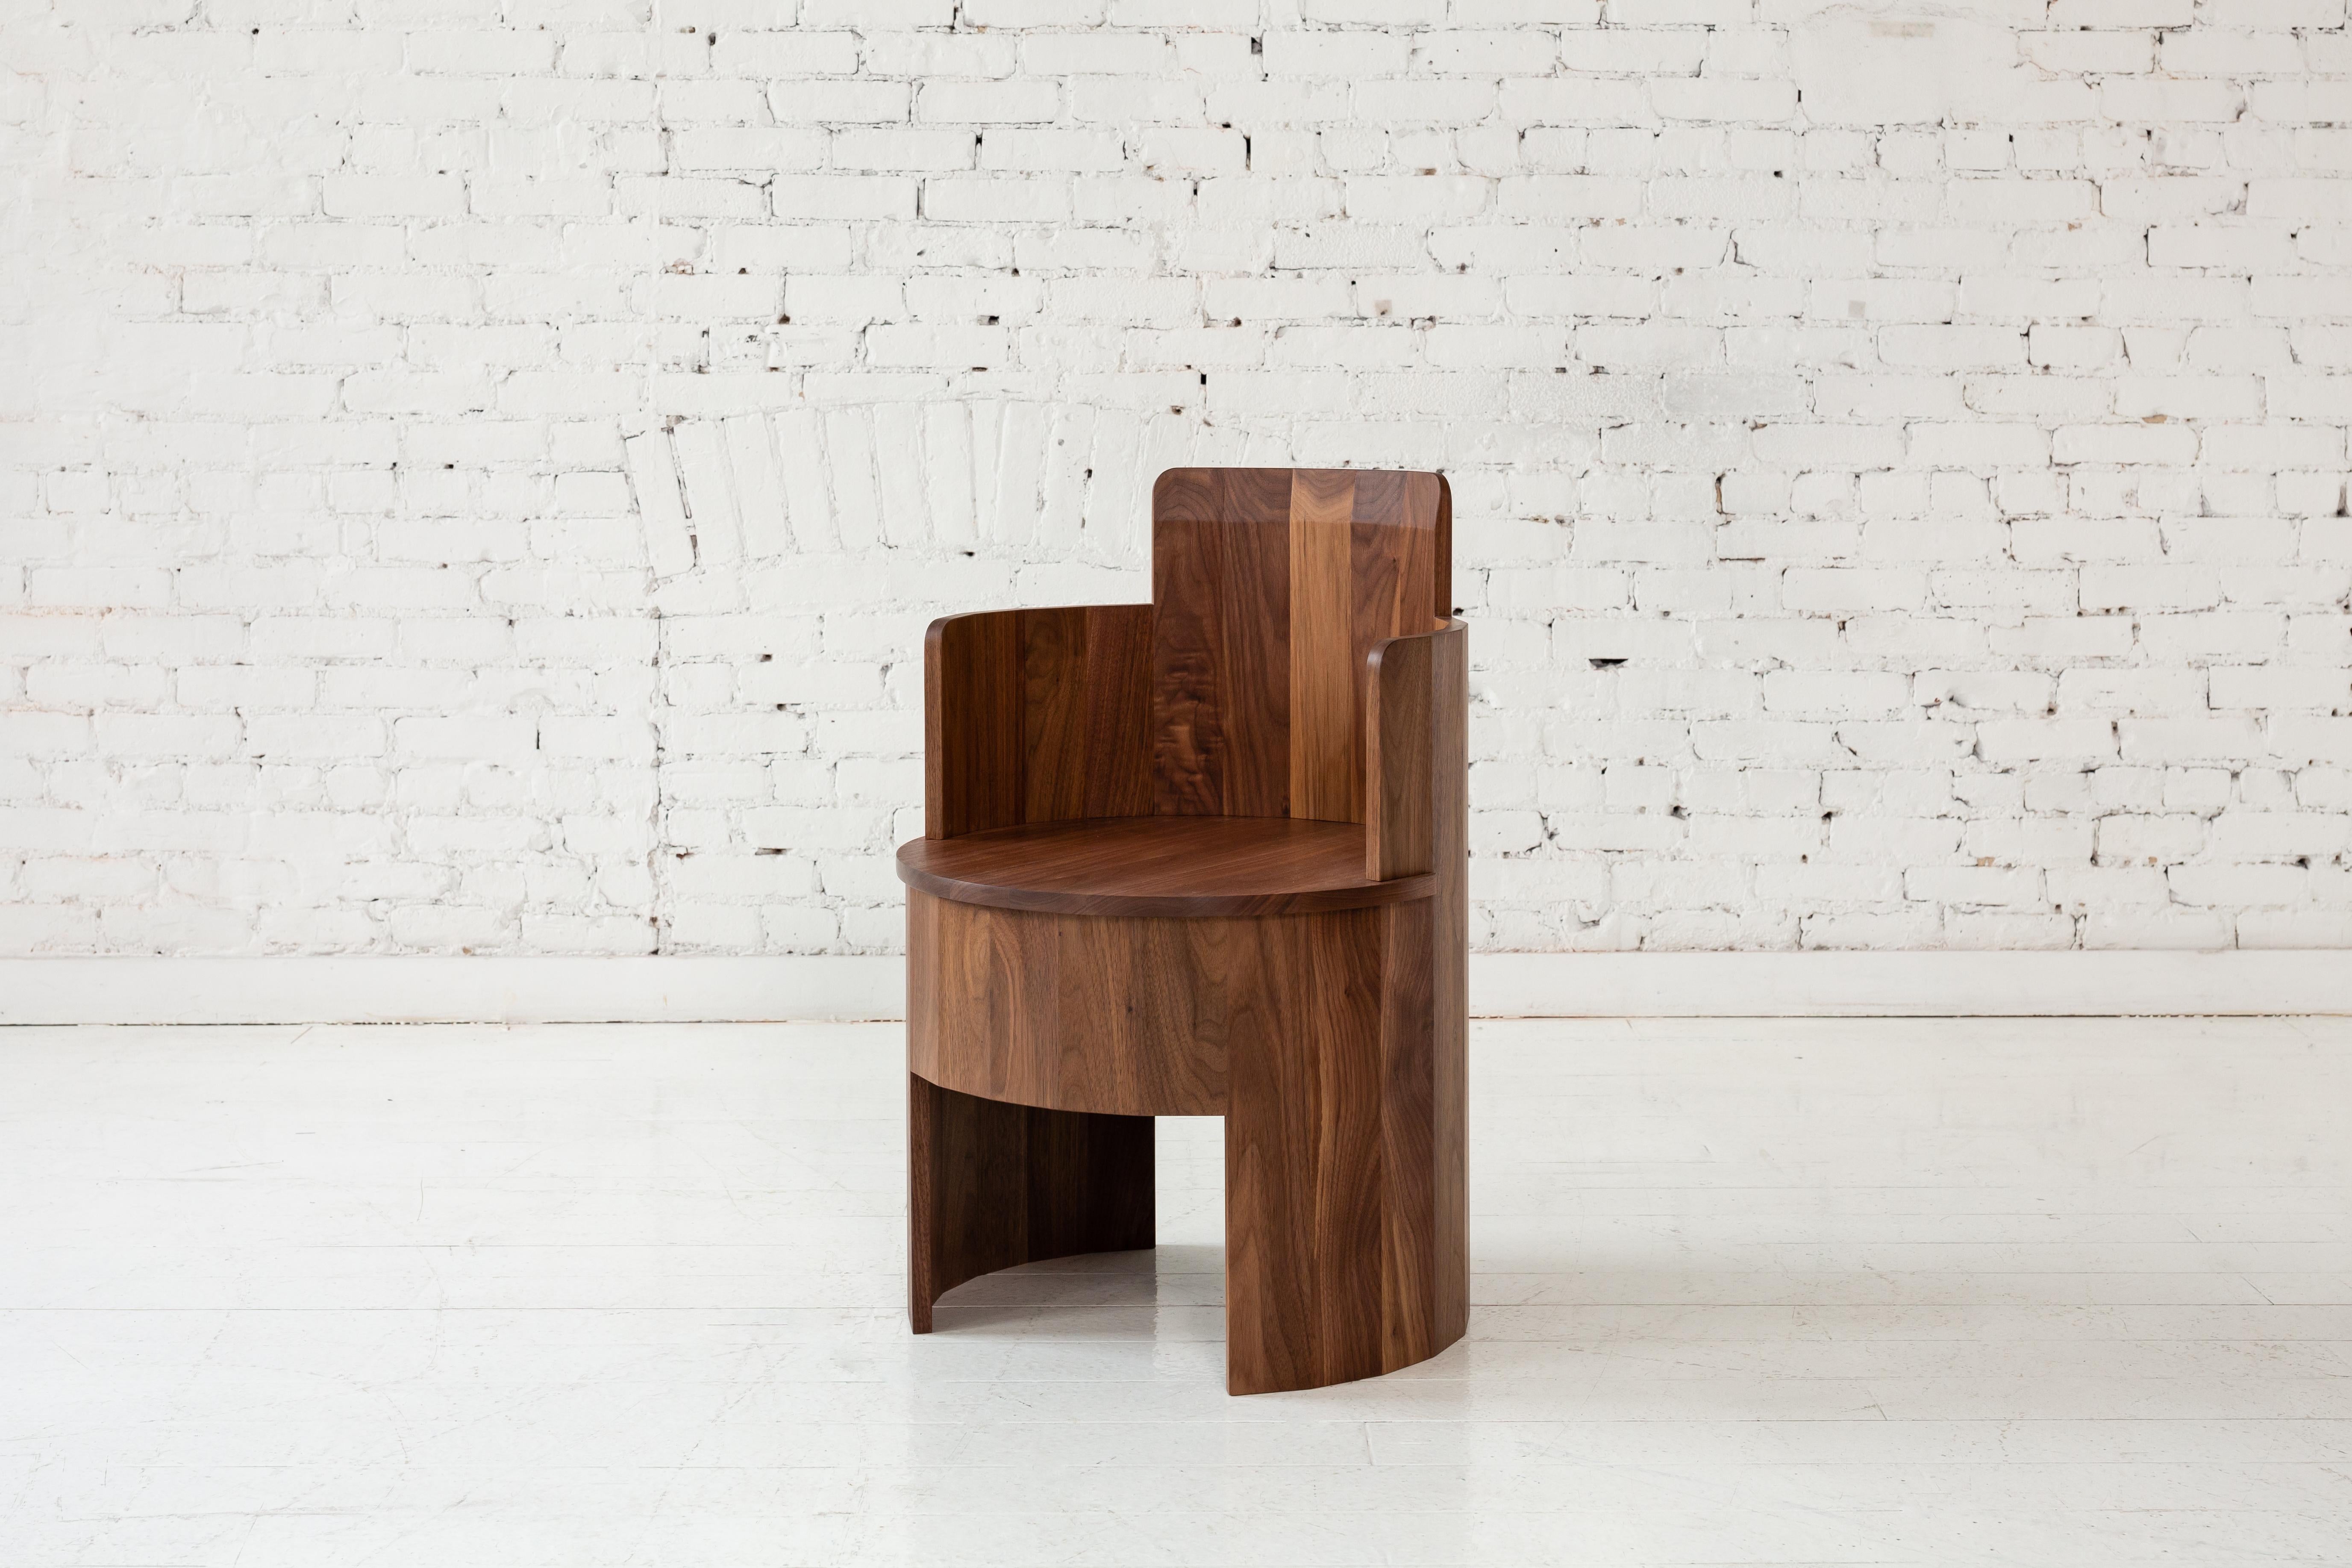 Cette chaise latérale en bois fait partie de la nouvelle collection Cooperage Dining. Chaque pièce comporte de grands éléments ronds à facettes qui, avec son homonyme, font référence au métier de tonnelier traditionnel de la fabrication des